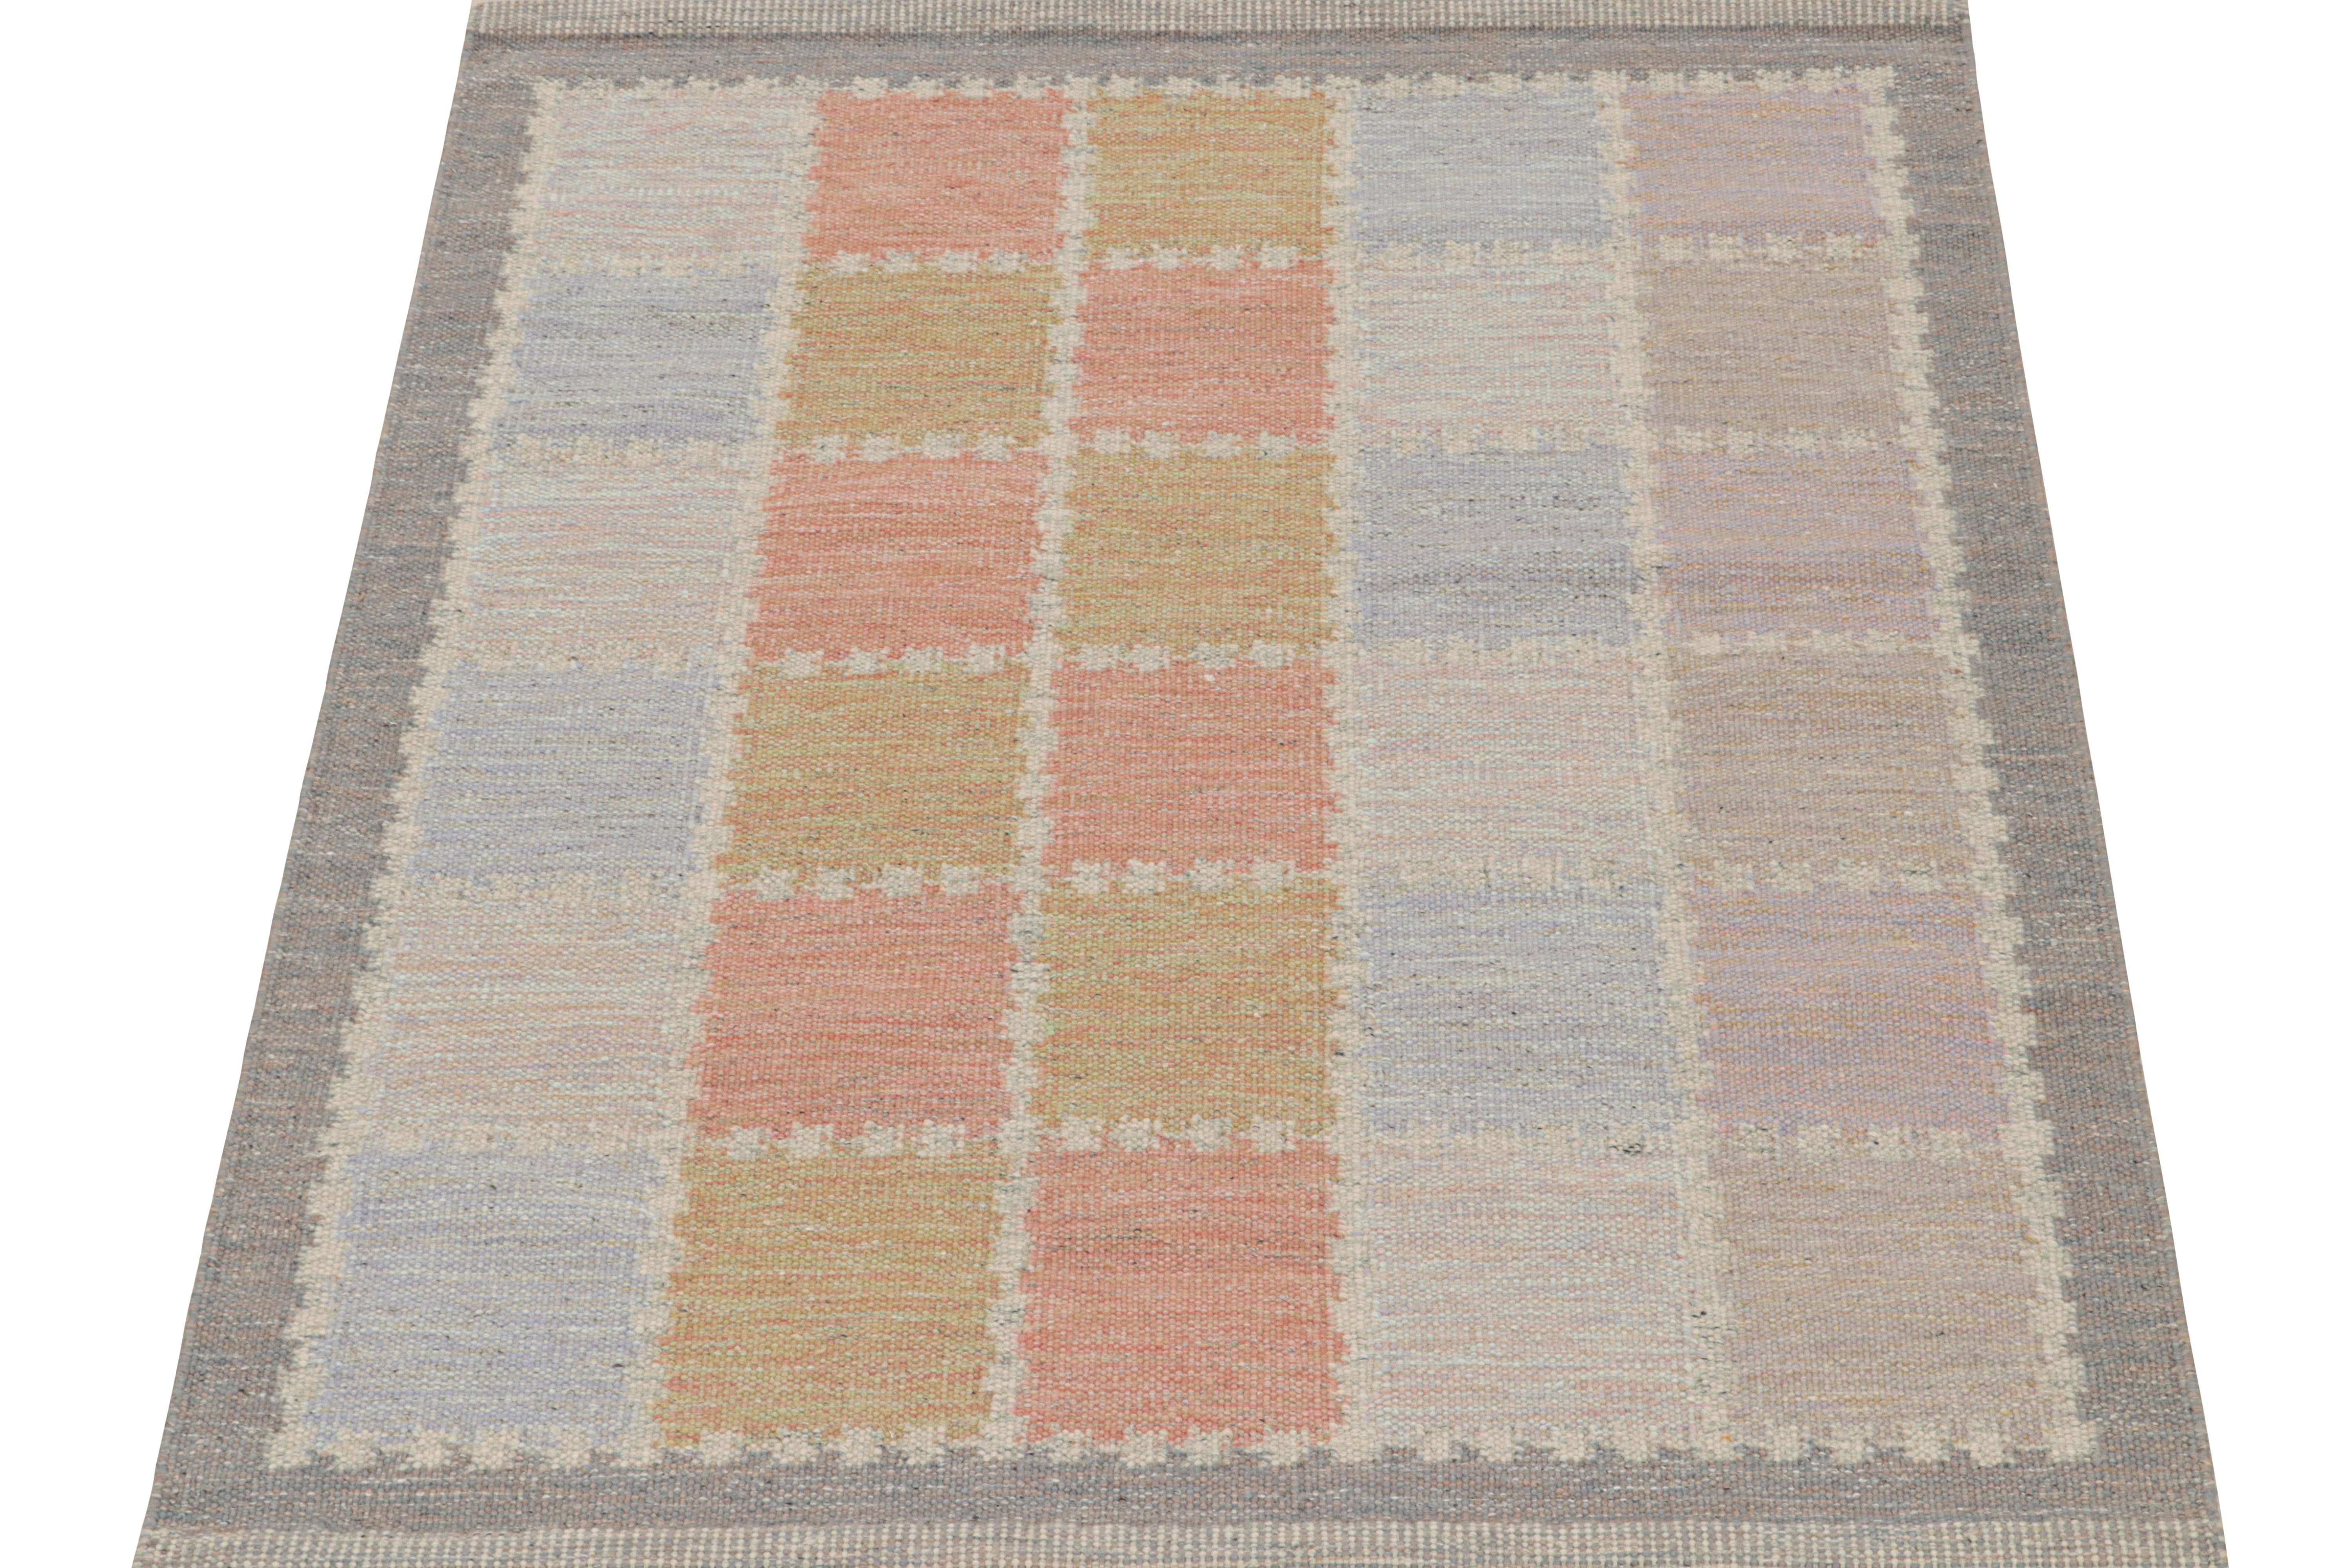 Dieser 6x6 Flachgewebe-Teppich ist eine neue Ergänzung der skandinavischen Kilim-Kollektion von Rug & Kilim. Das aus Wolle und natürlichen Garnen handgewebte Design spiegelt eine zeitgenössische Interpretation des Rollakans aus der Mitte des